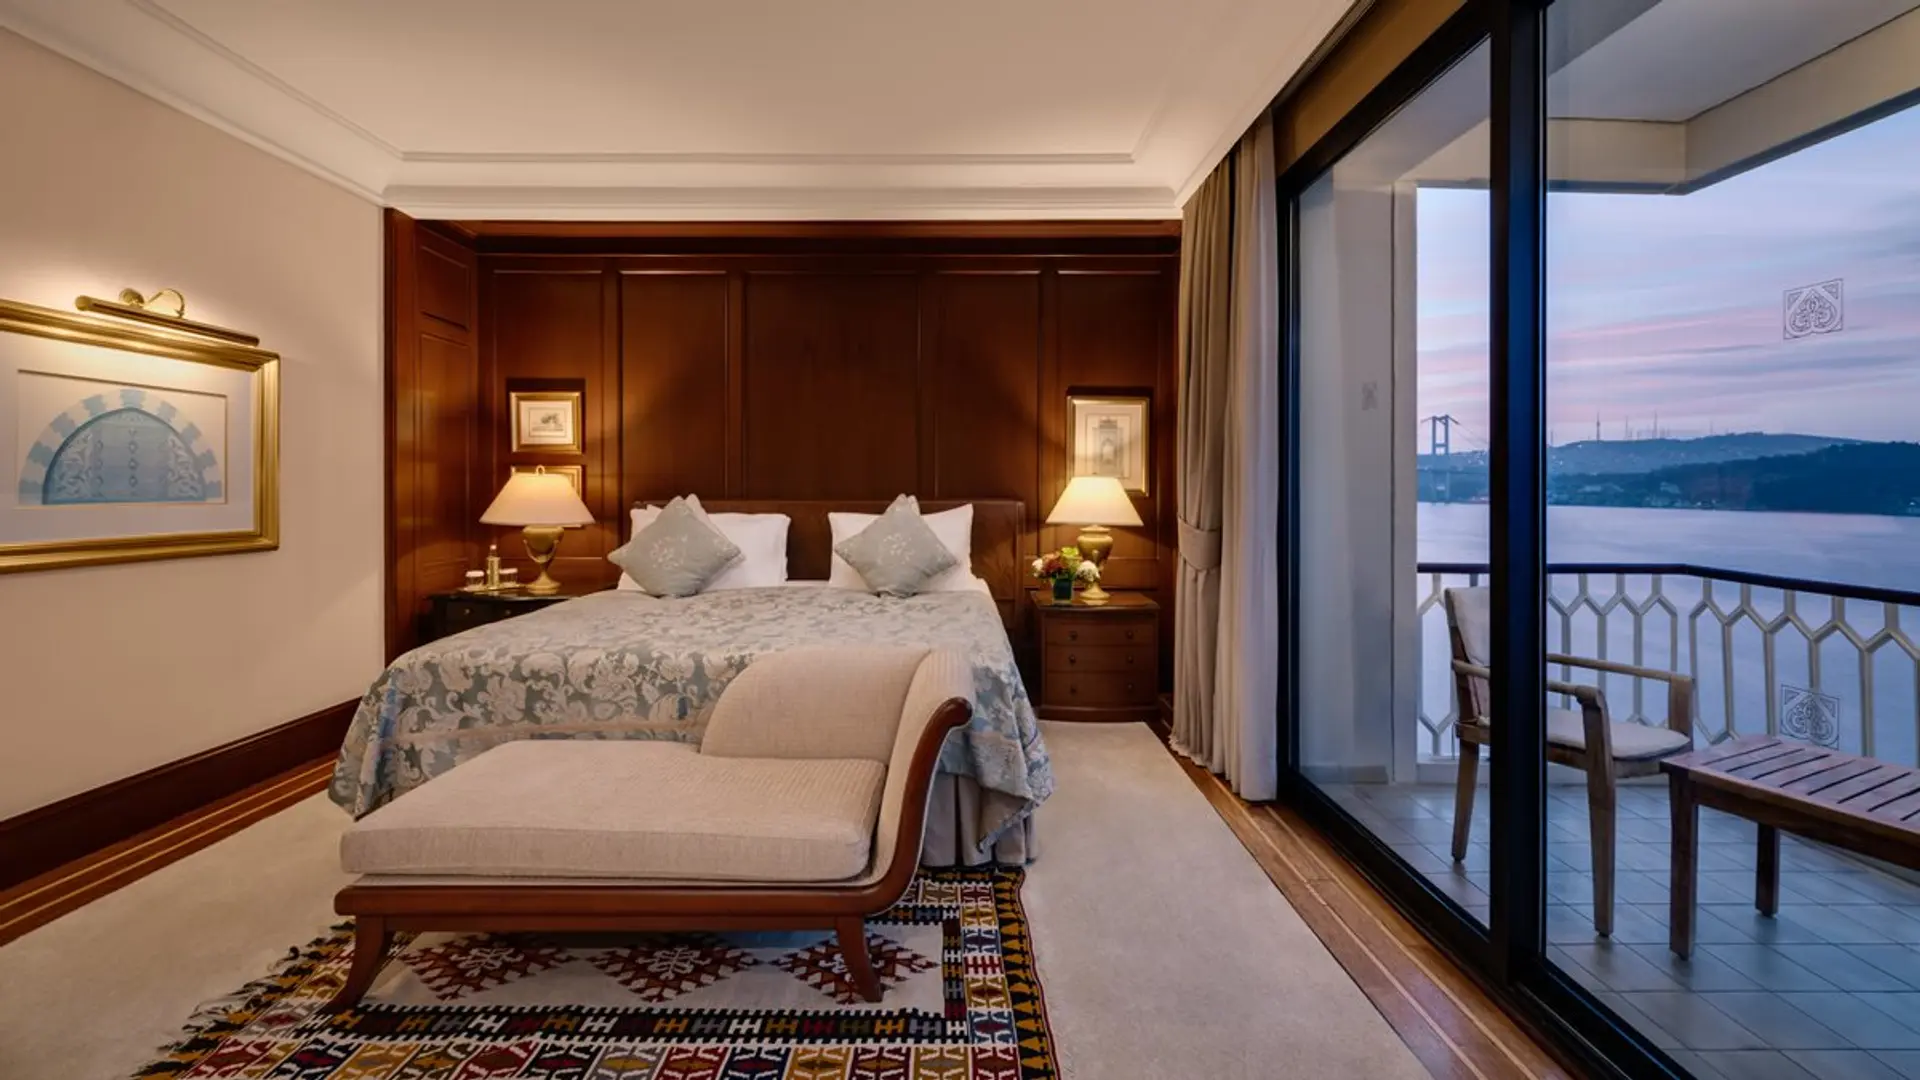 Hotel review Accommodation' - Çırağan Palace Kempinski Istanbul - 7